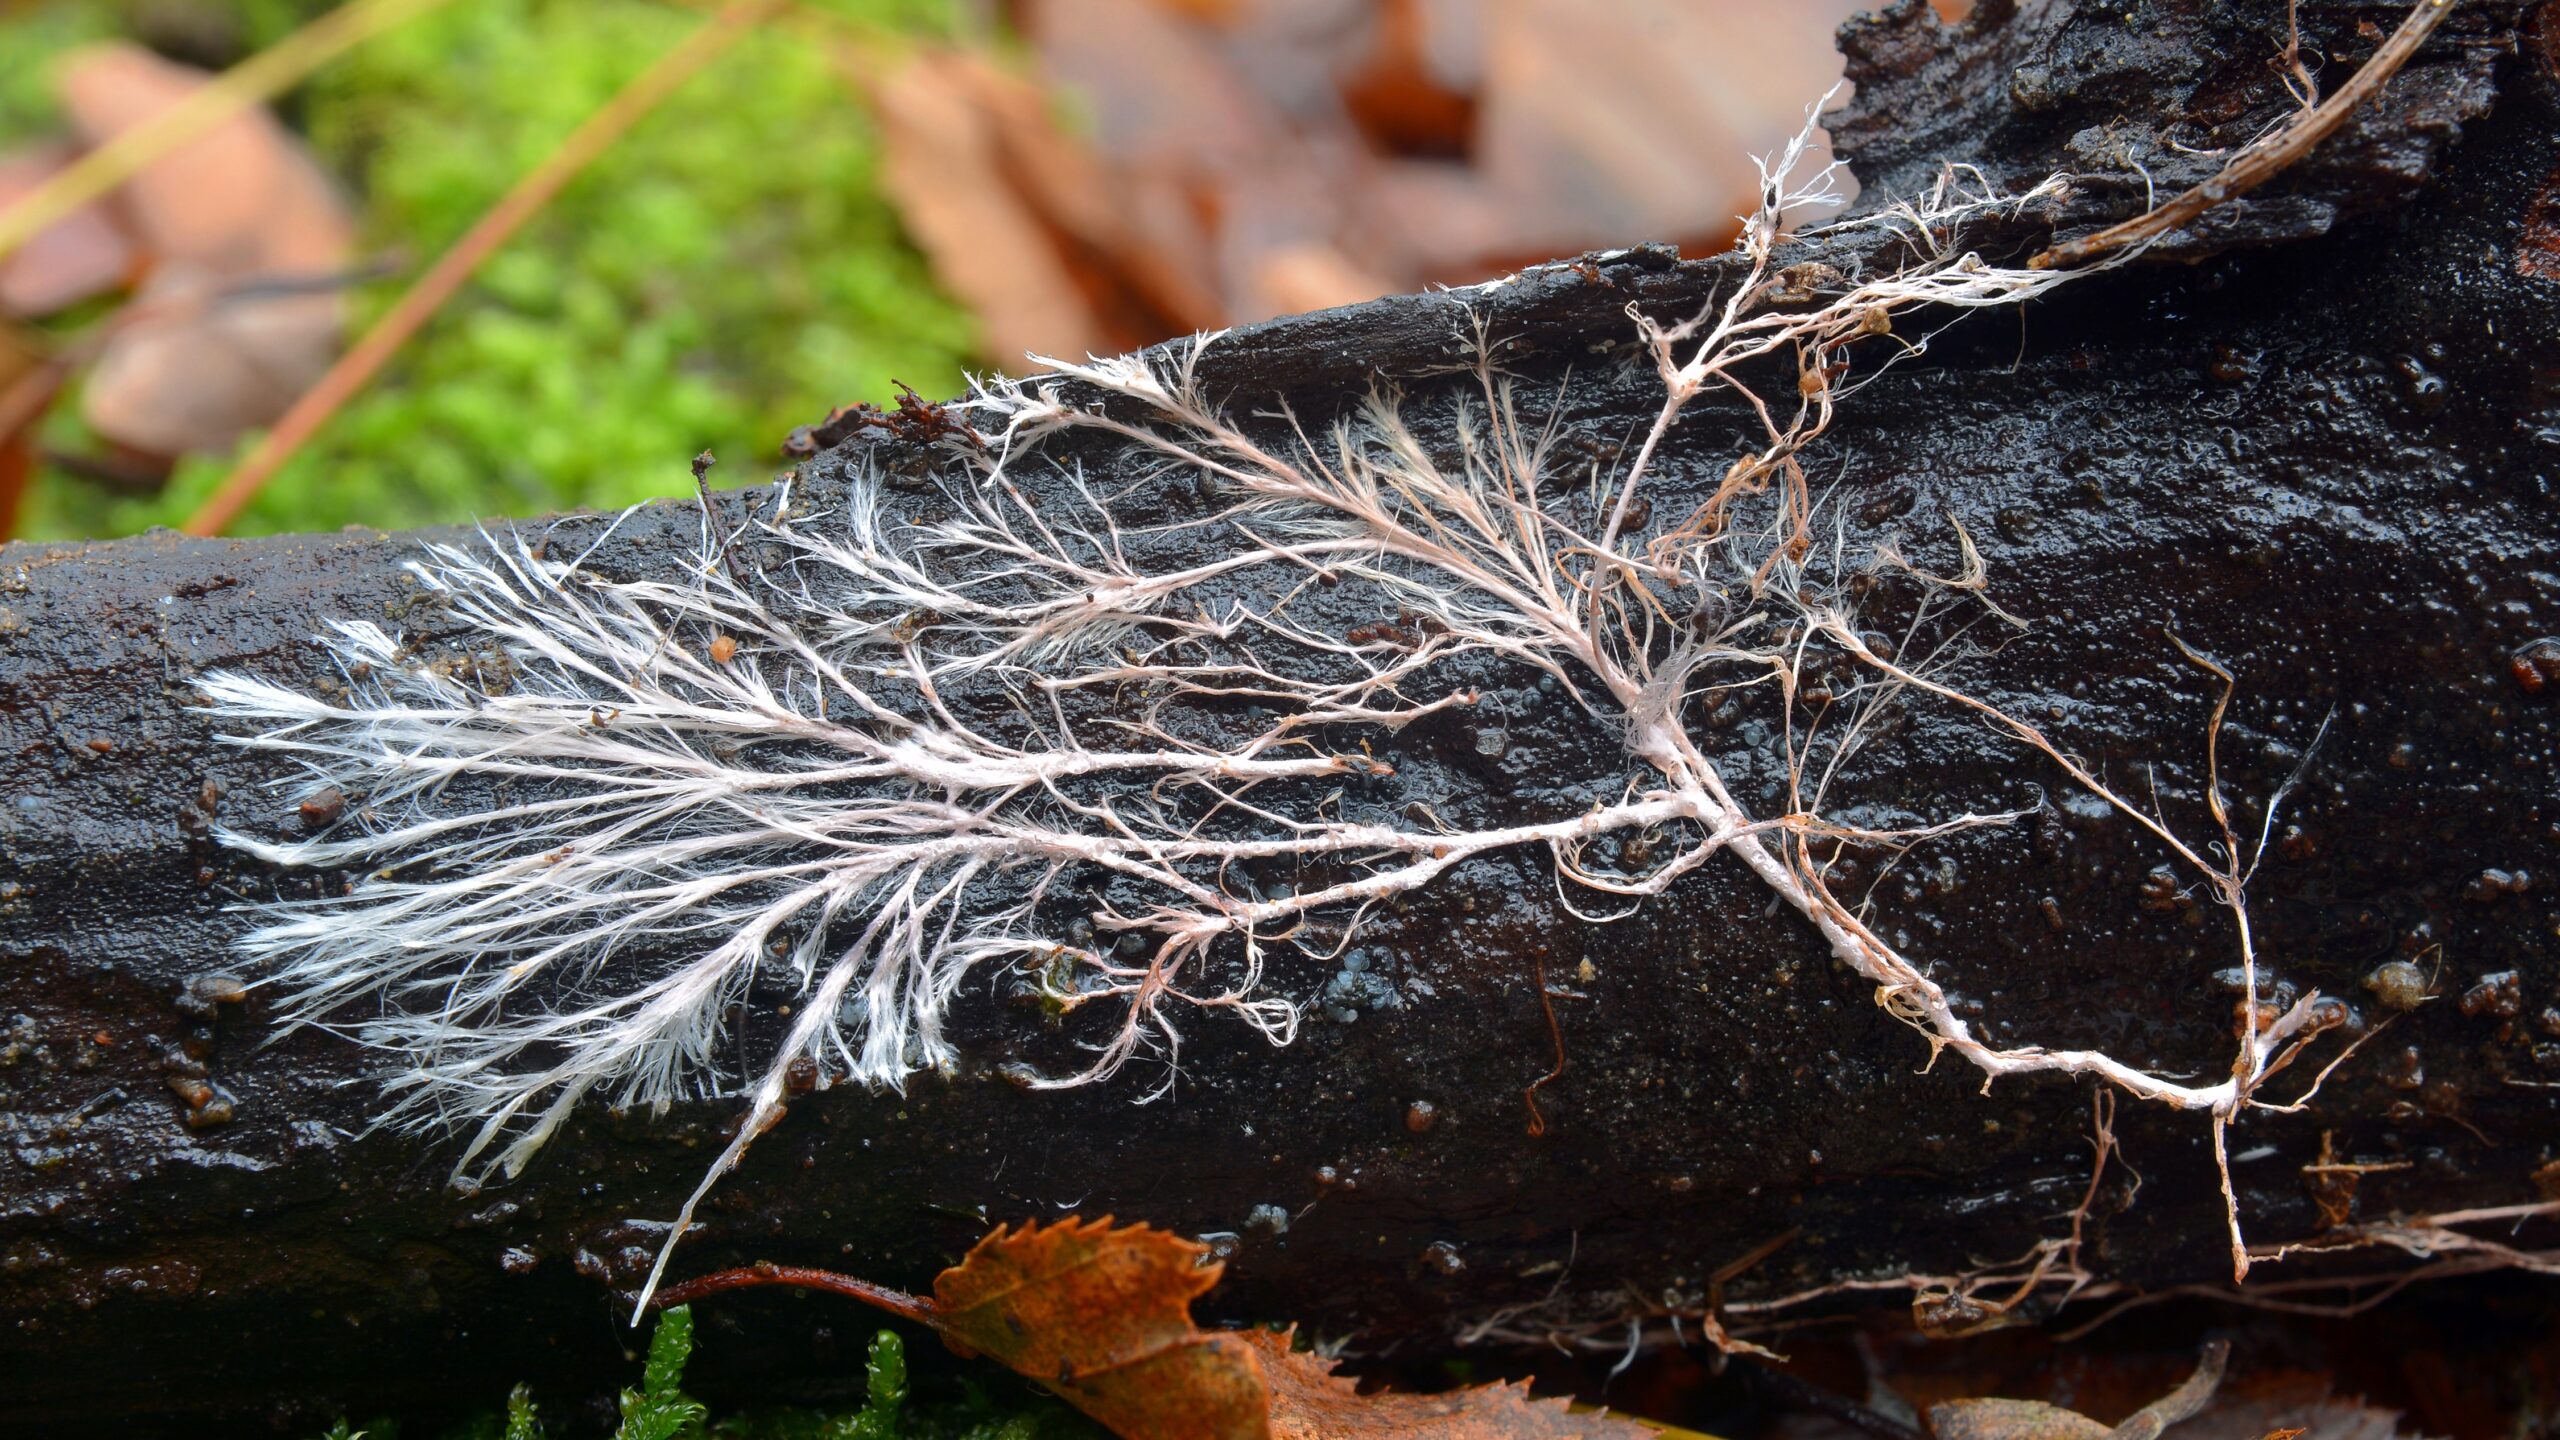 Fungi mycelium on old beam of wood.